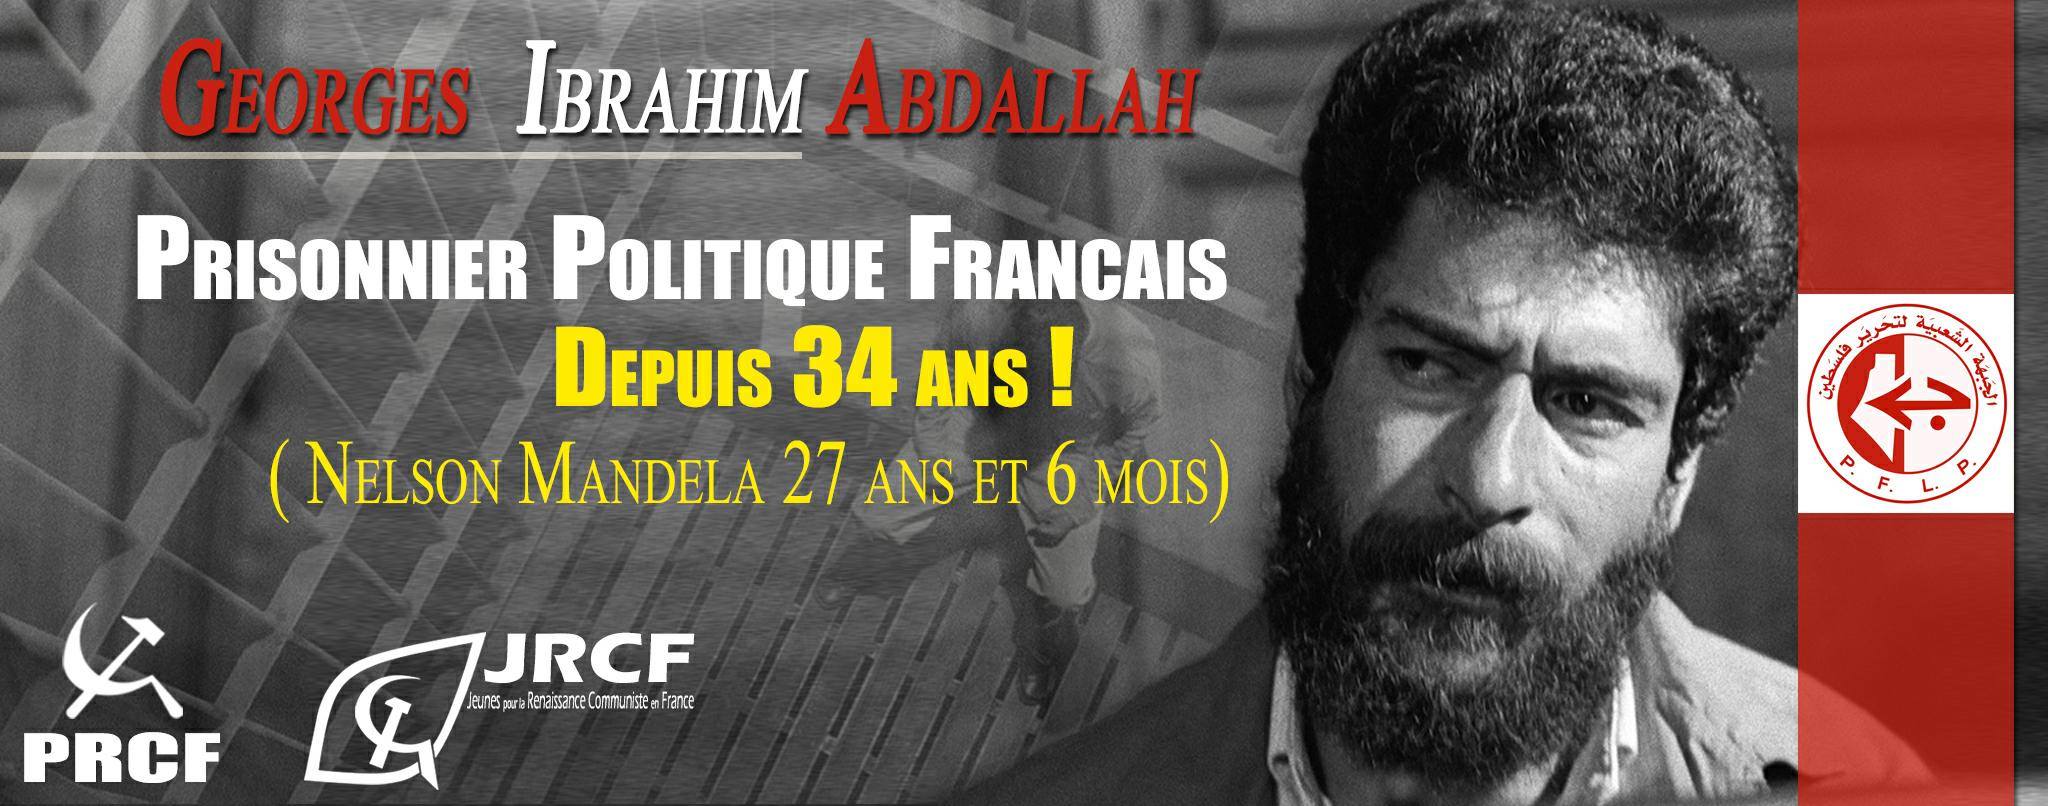 Libération immédiate inconditionnelle pour Georges Ibrahim Abdallah !